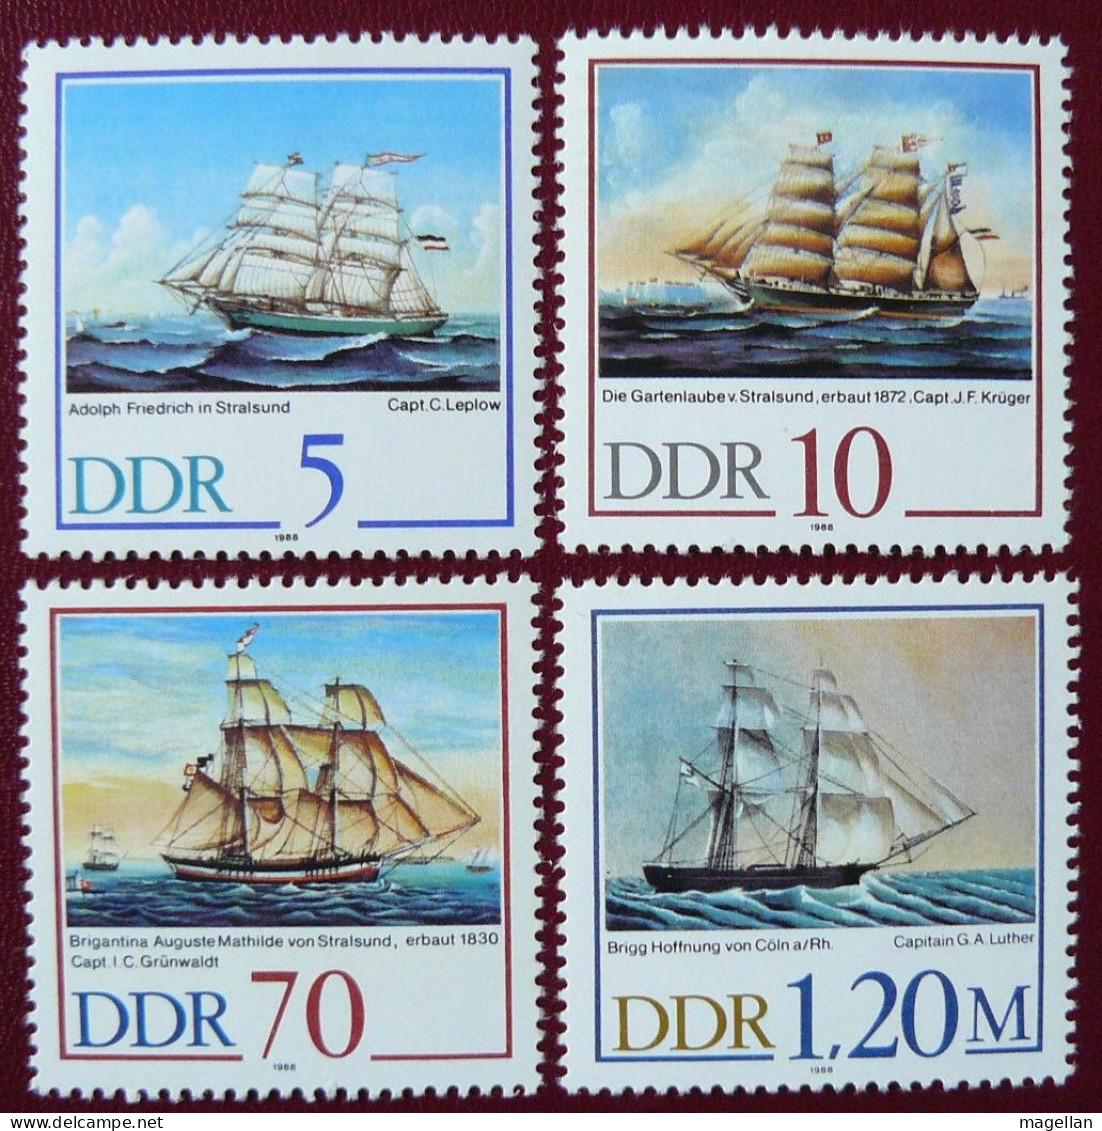 Allemagne (DDR) - Yvert 2804/2807 Neufs ** (MNH) - 1988 - Bateaux - Voiliers - Bateaux